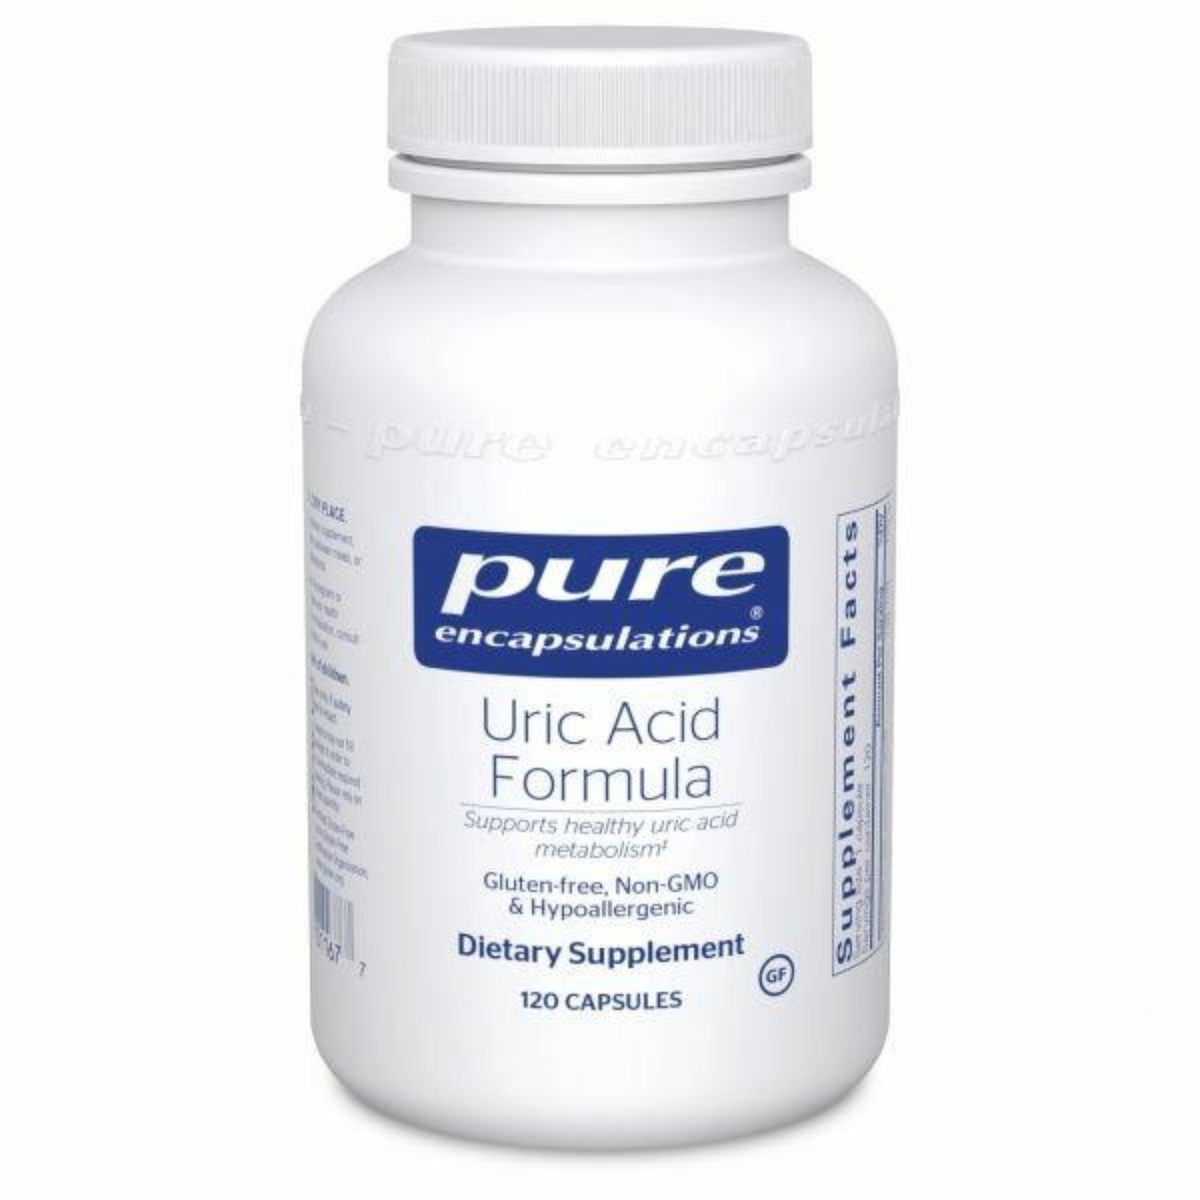 Primary Image of Uric Acid Formula Capsules (120 count)